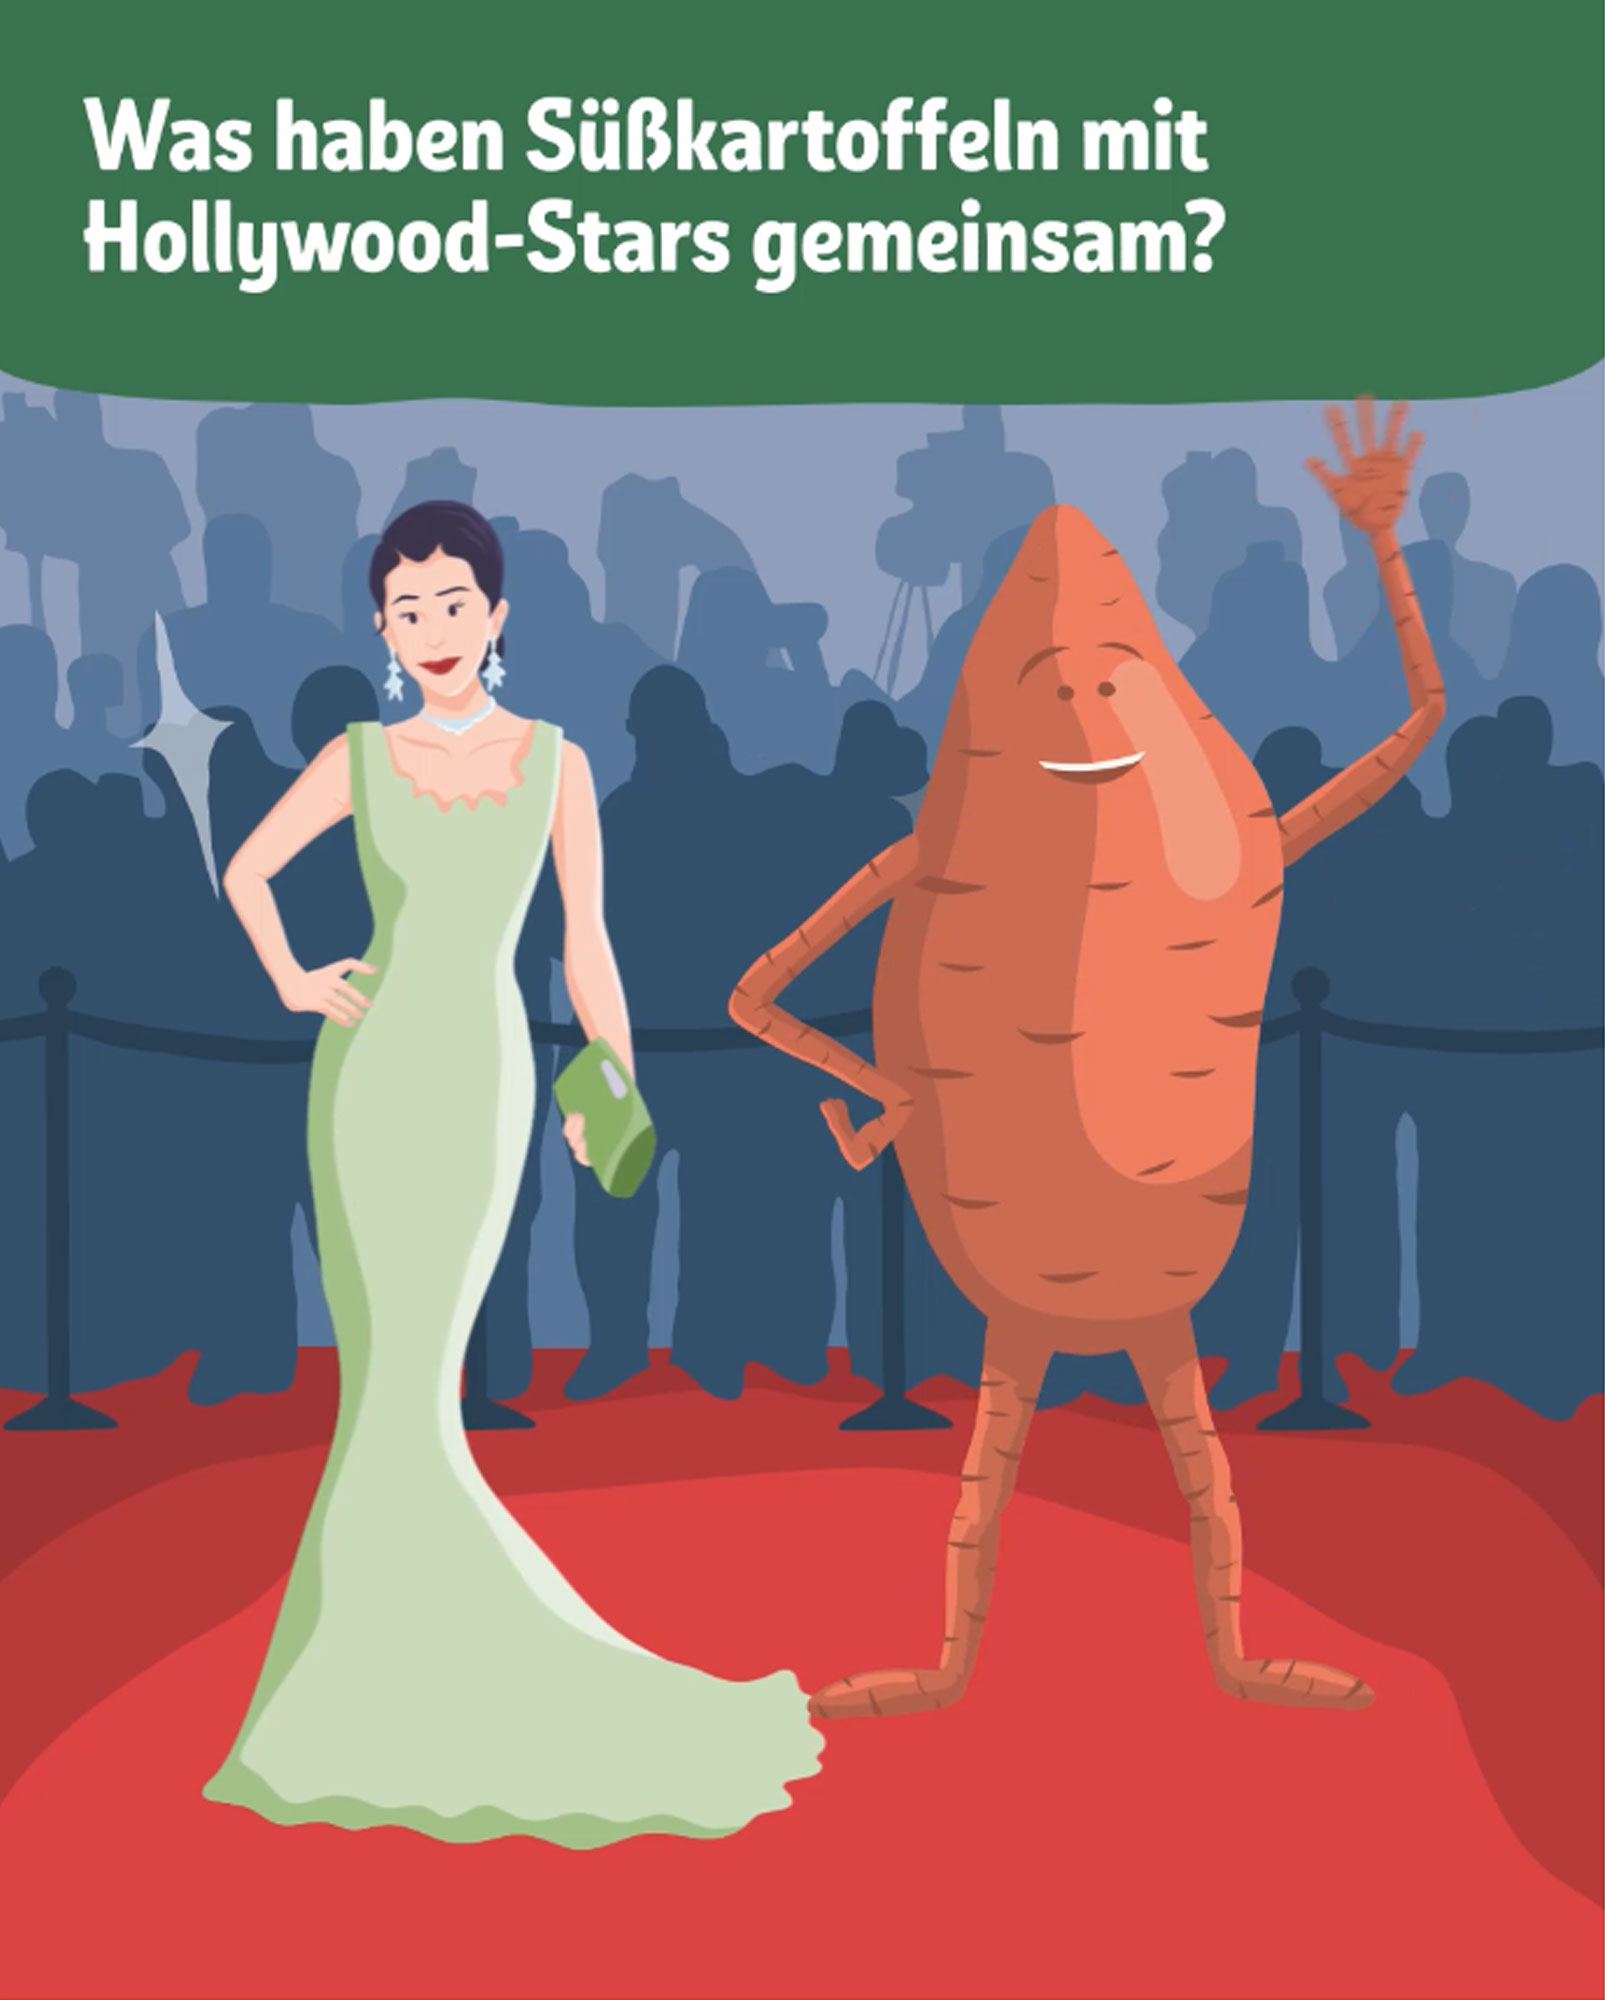 Was haben Süßkartoffeln und Hollywood-Stars gemeinsam?